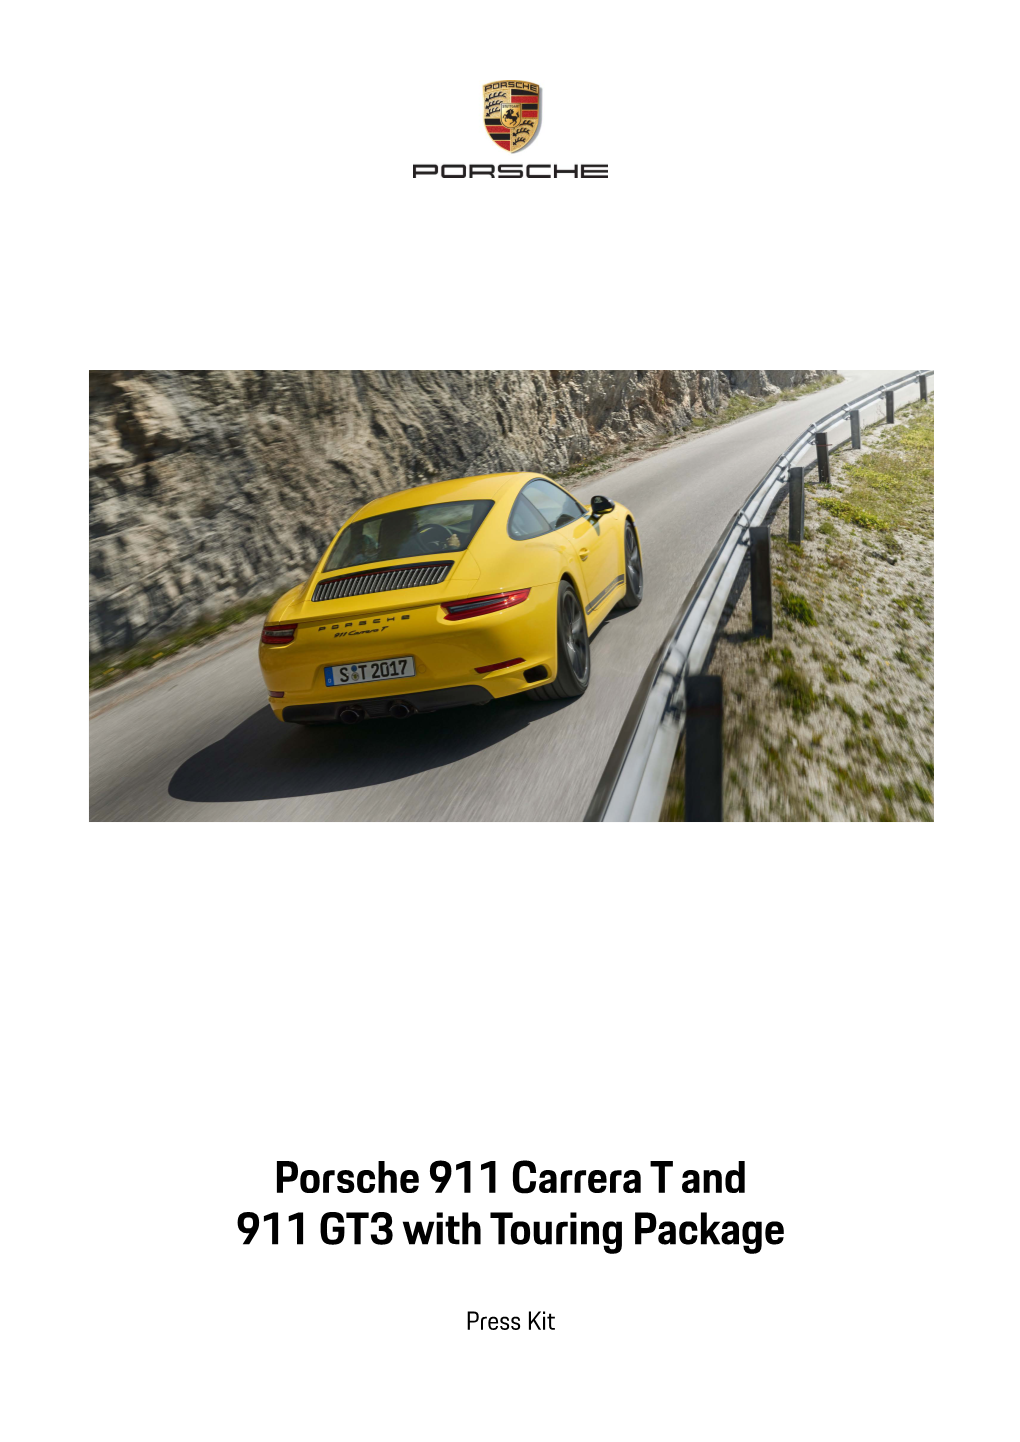 The Porsche 911 Carrera T 6